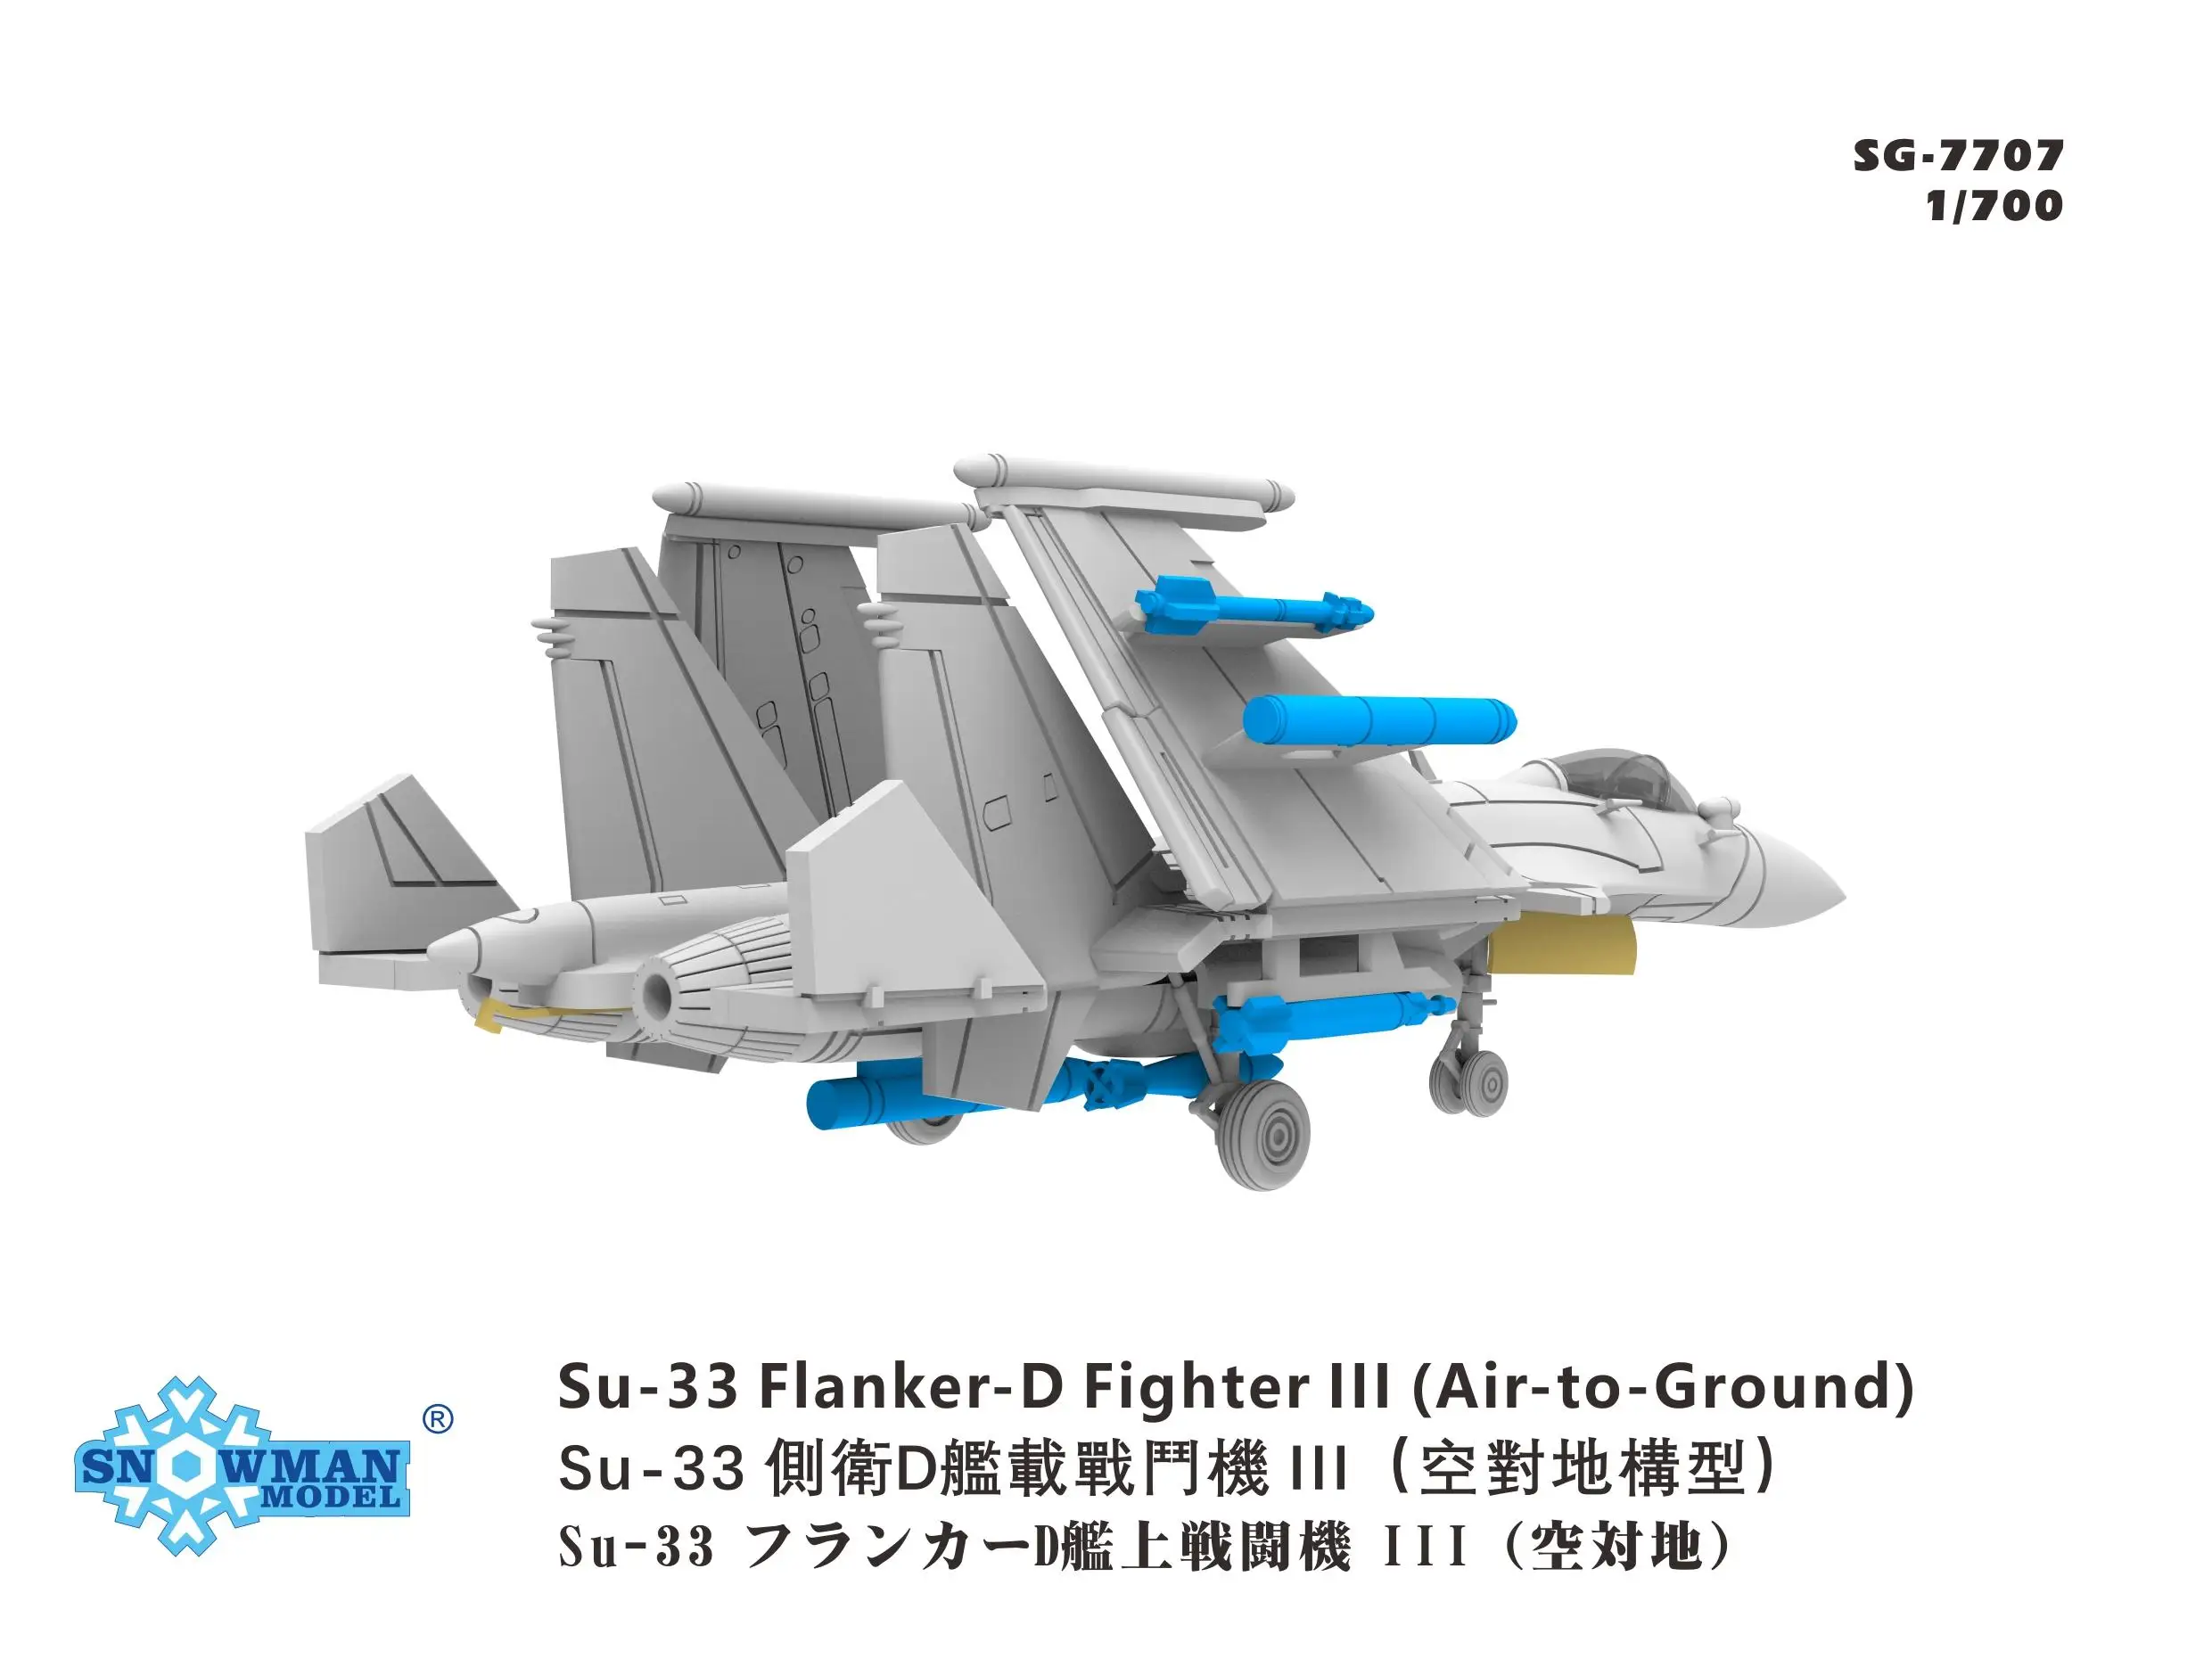 Snowman SG-7707 в масштабе 1/700 Истребитель Су-33 Flanker-d Ill (воздух-земля) - 5